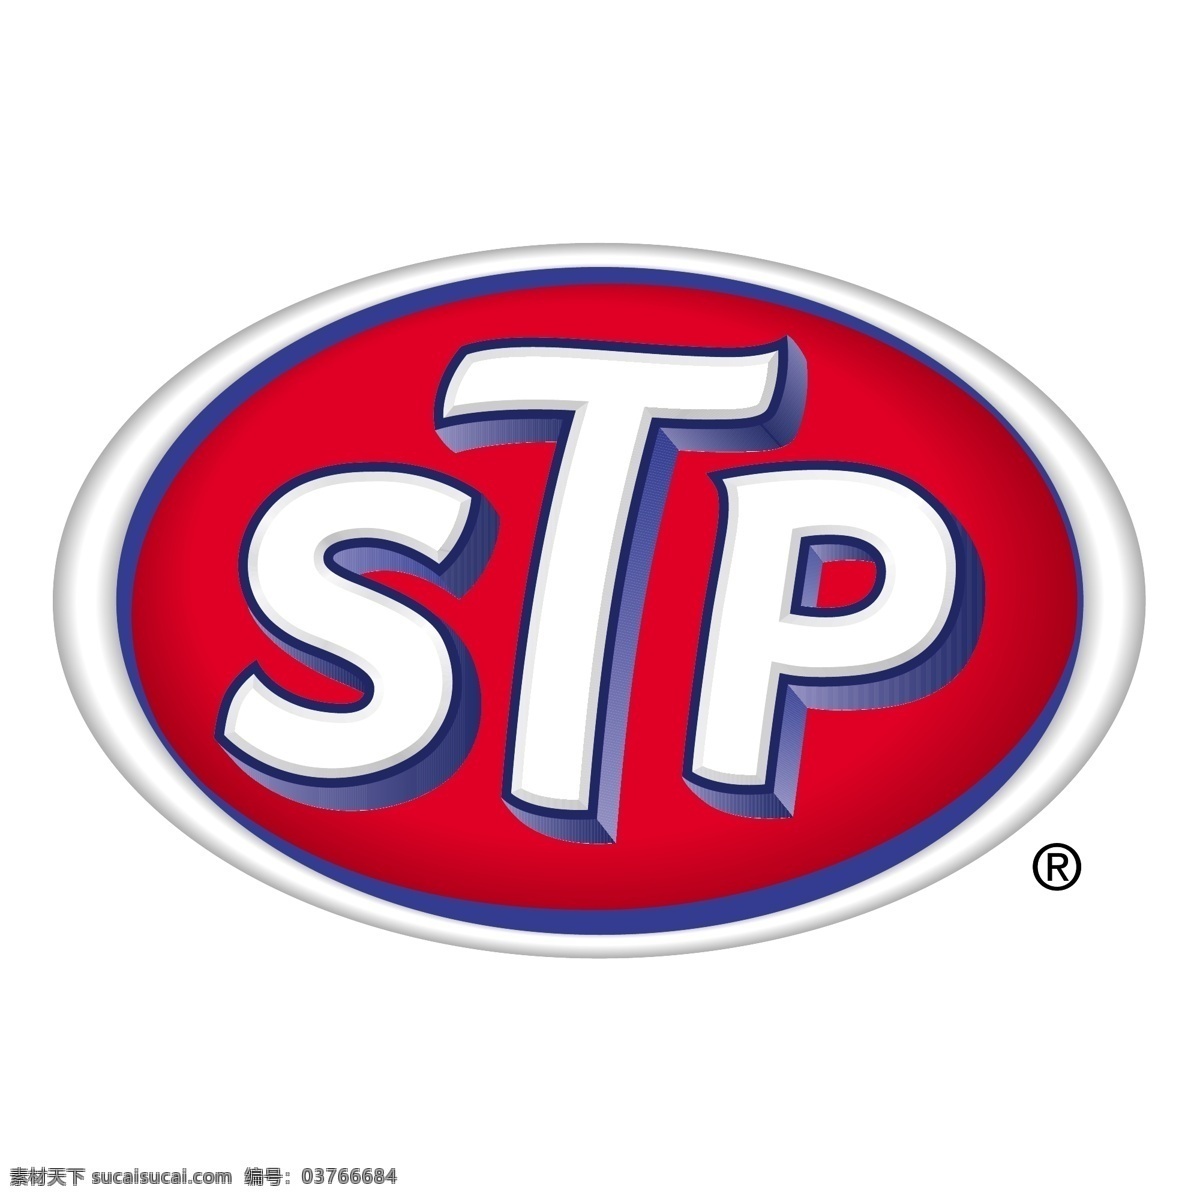 stp 矢量标志下载 免费矢量标识 商标 品牌标识 标识 矢量 免费 品牌 公司 白色